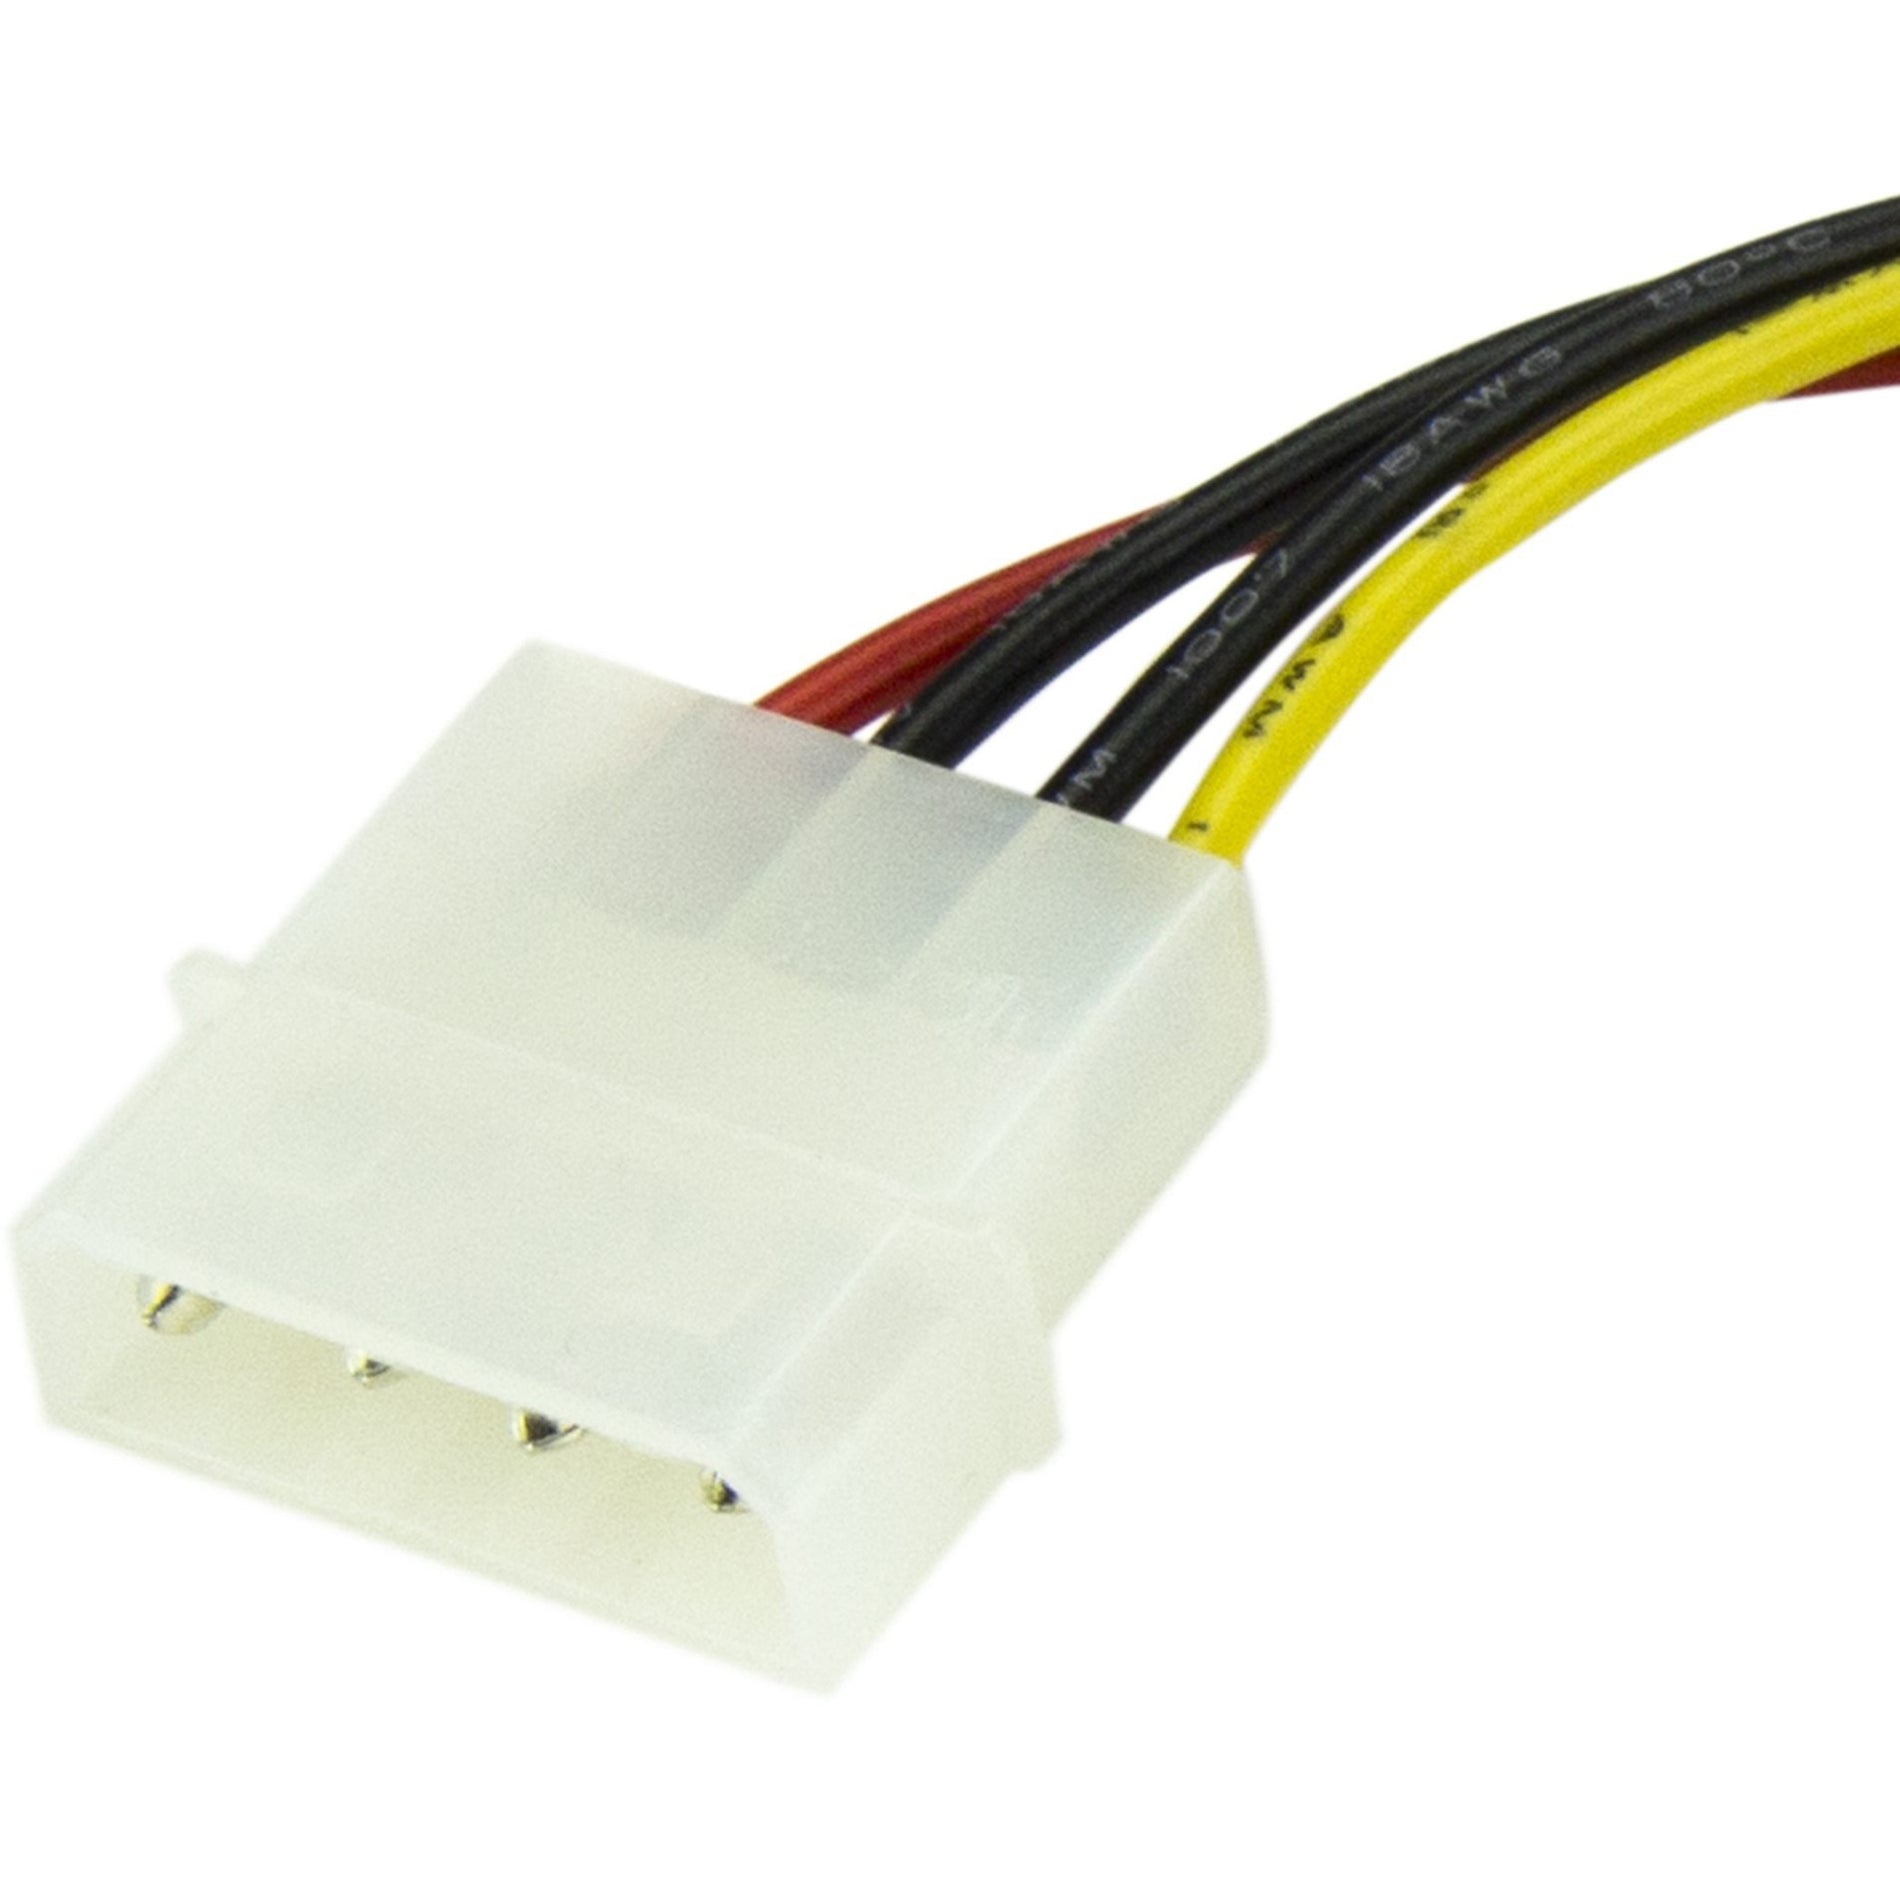 StarTech.com SATAPOWADAP 6in 4 Pin Molex to SATA Power Cable Adapter Verbinden Sie Ihre Festplatte mühelos